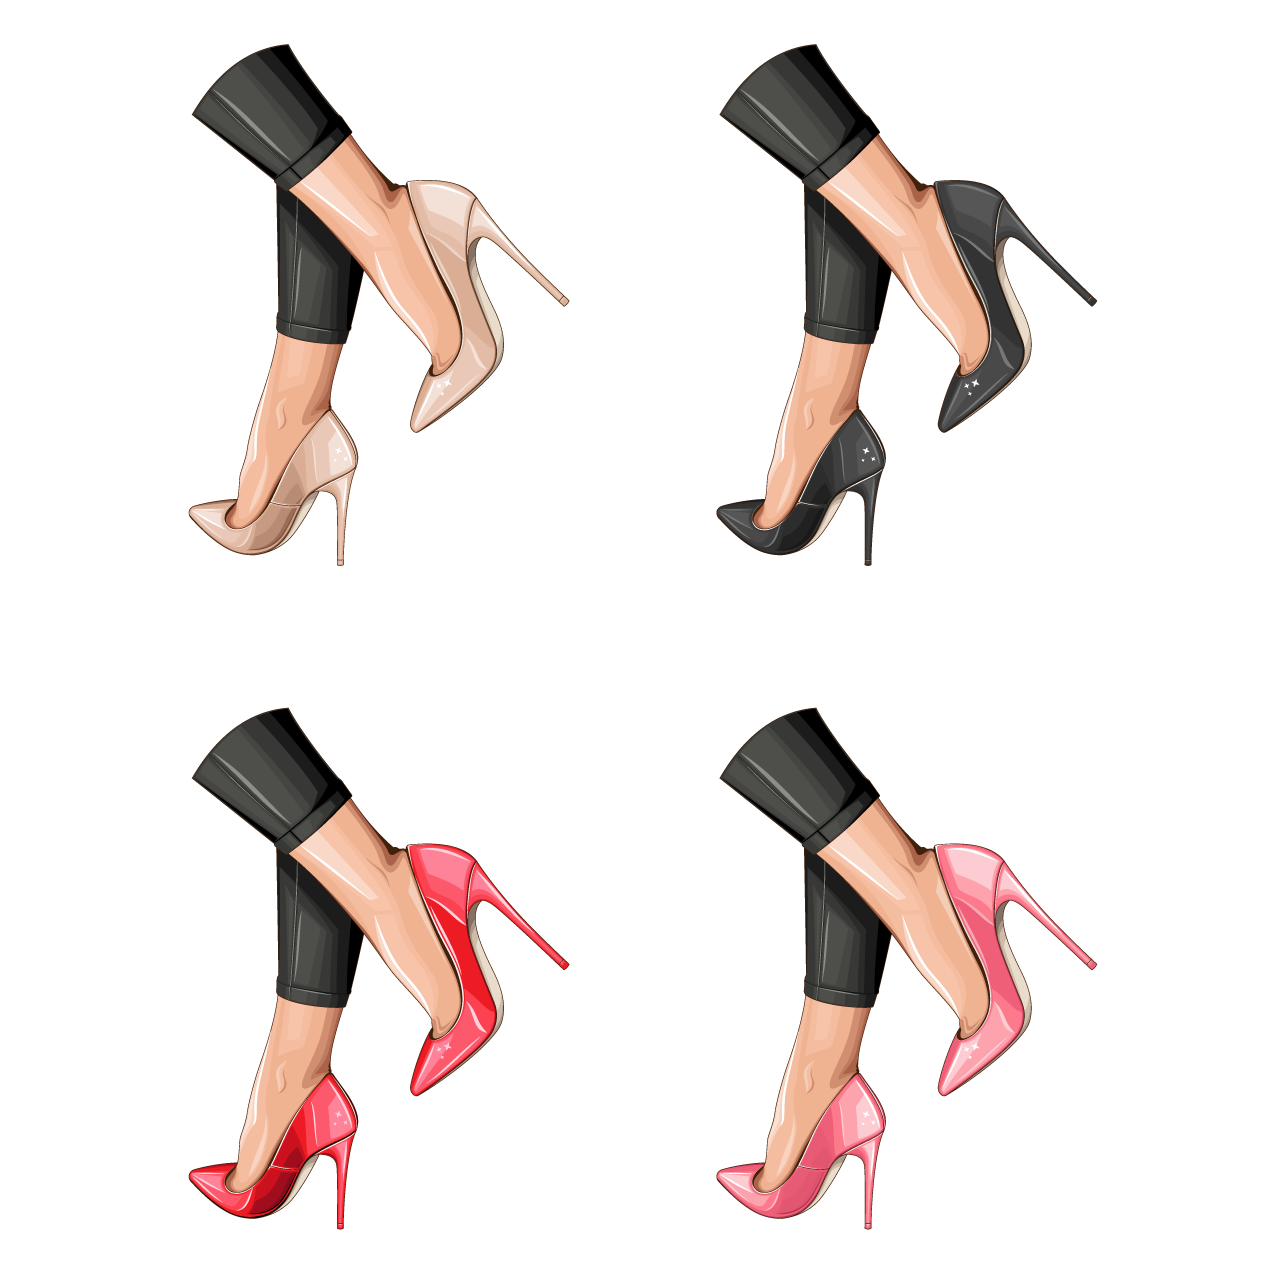 Fashion women shoes high heels stiletto shoes sexy women legs